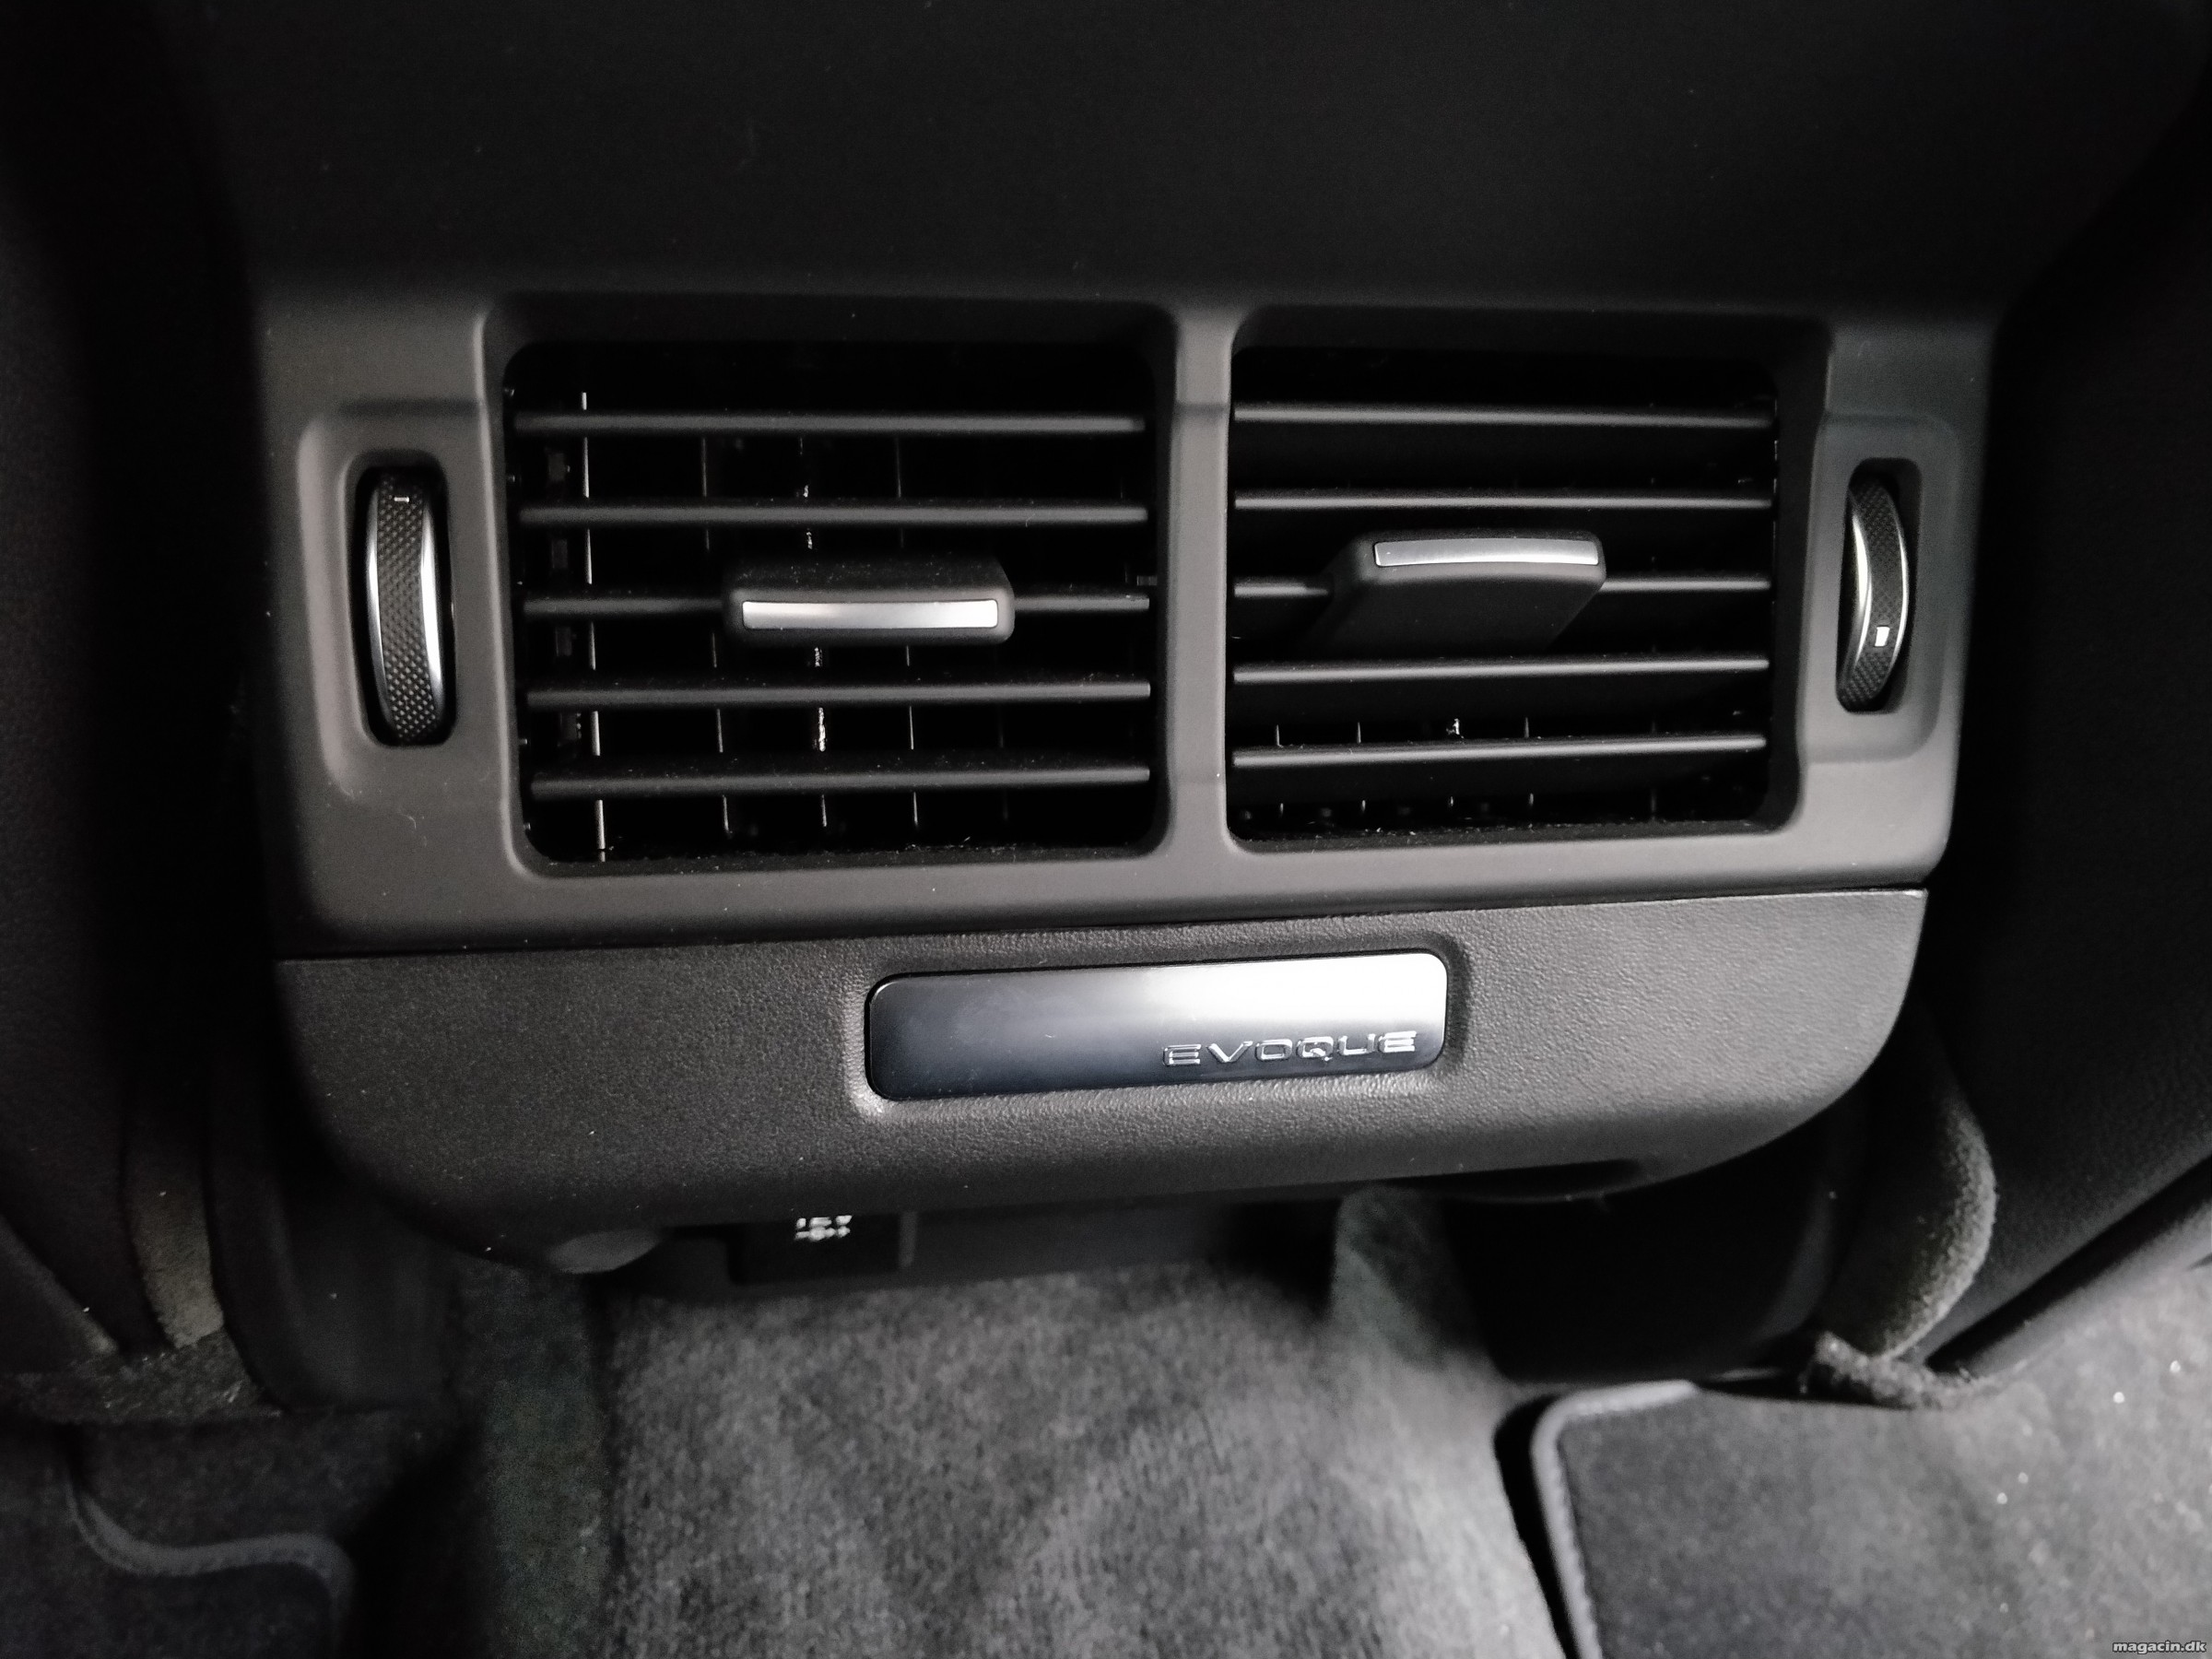 Smugkig: Her er den nye Land Rover Evoque